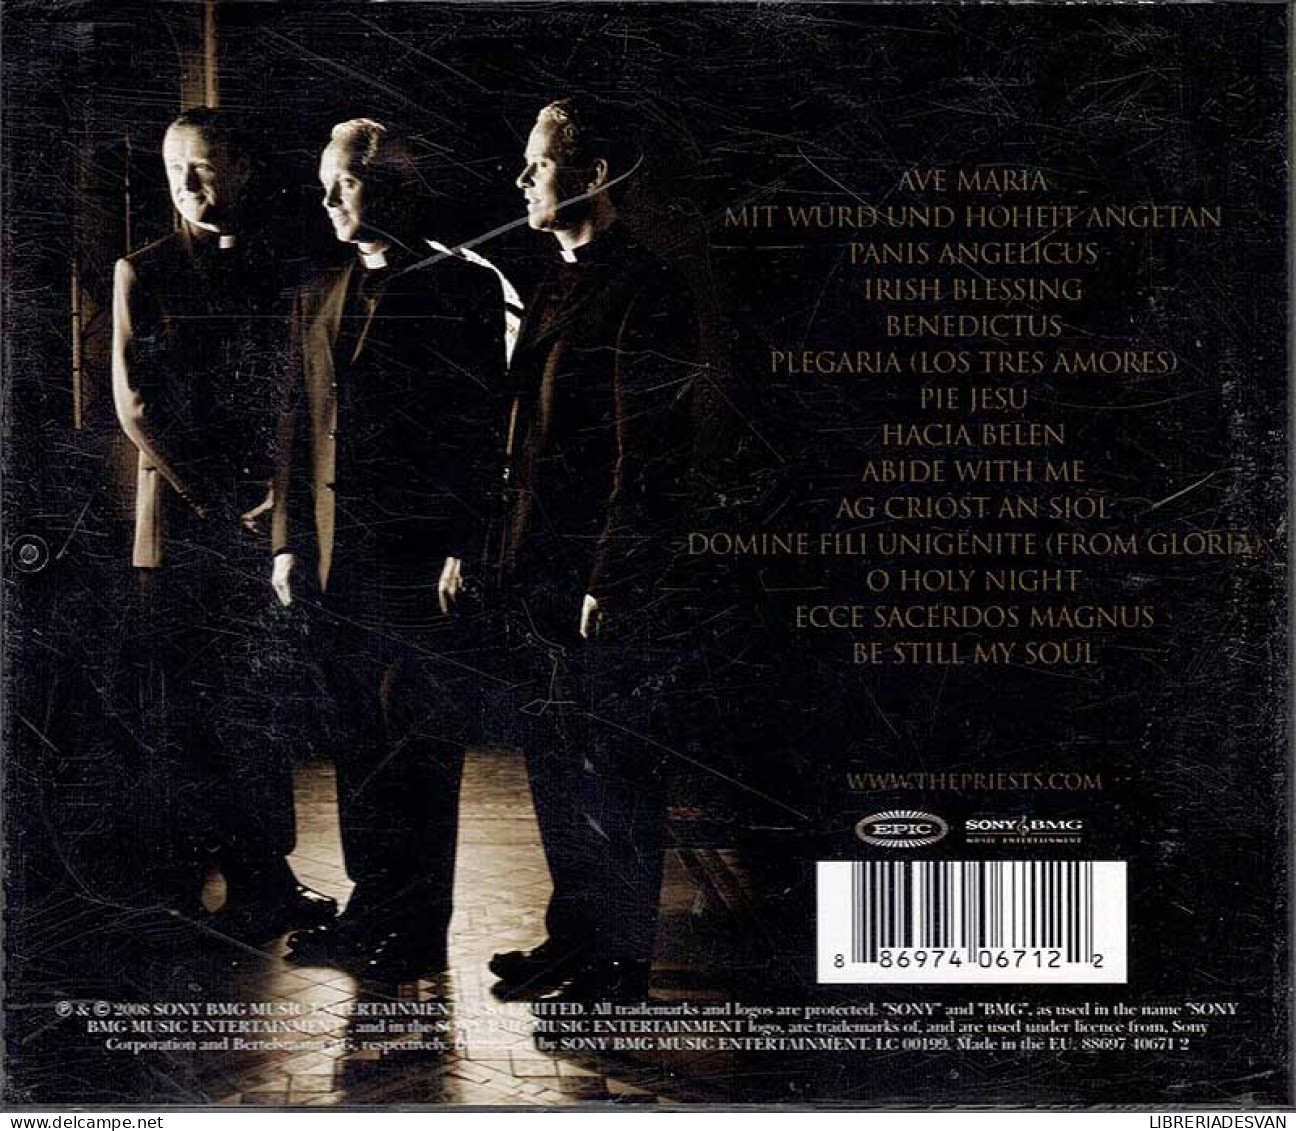 The Priests - The Priests. CD - Klassiekers